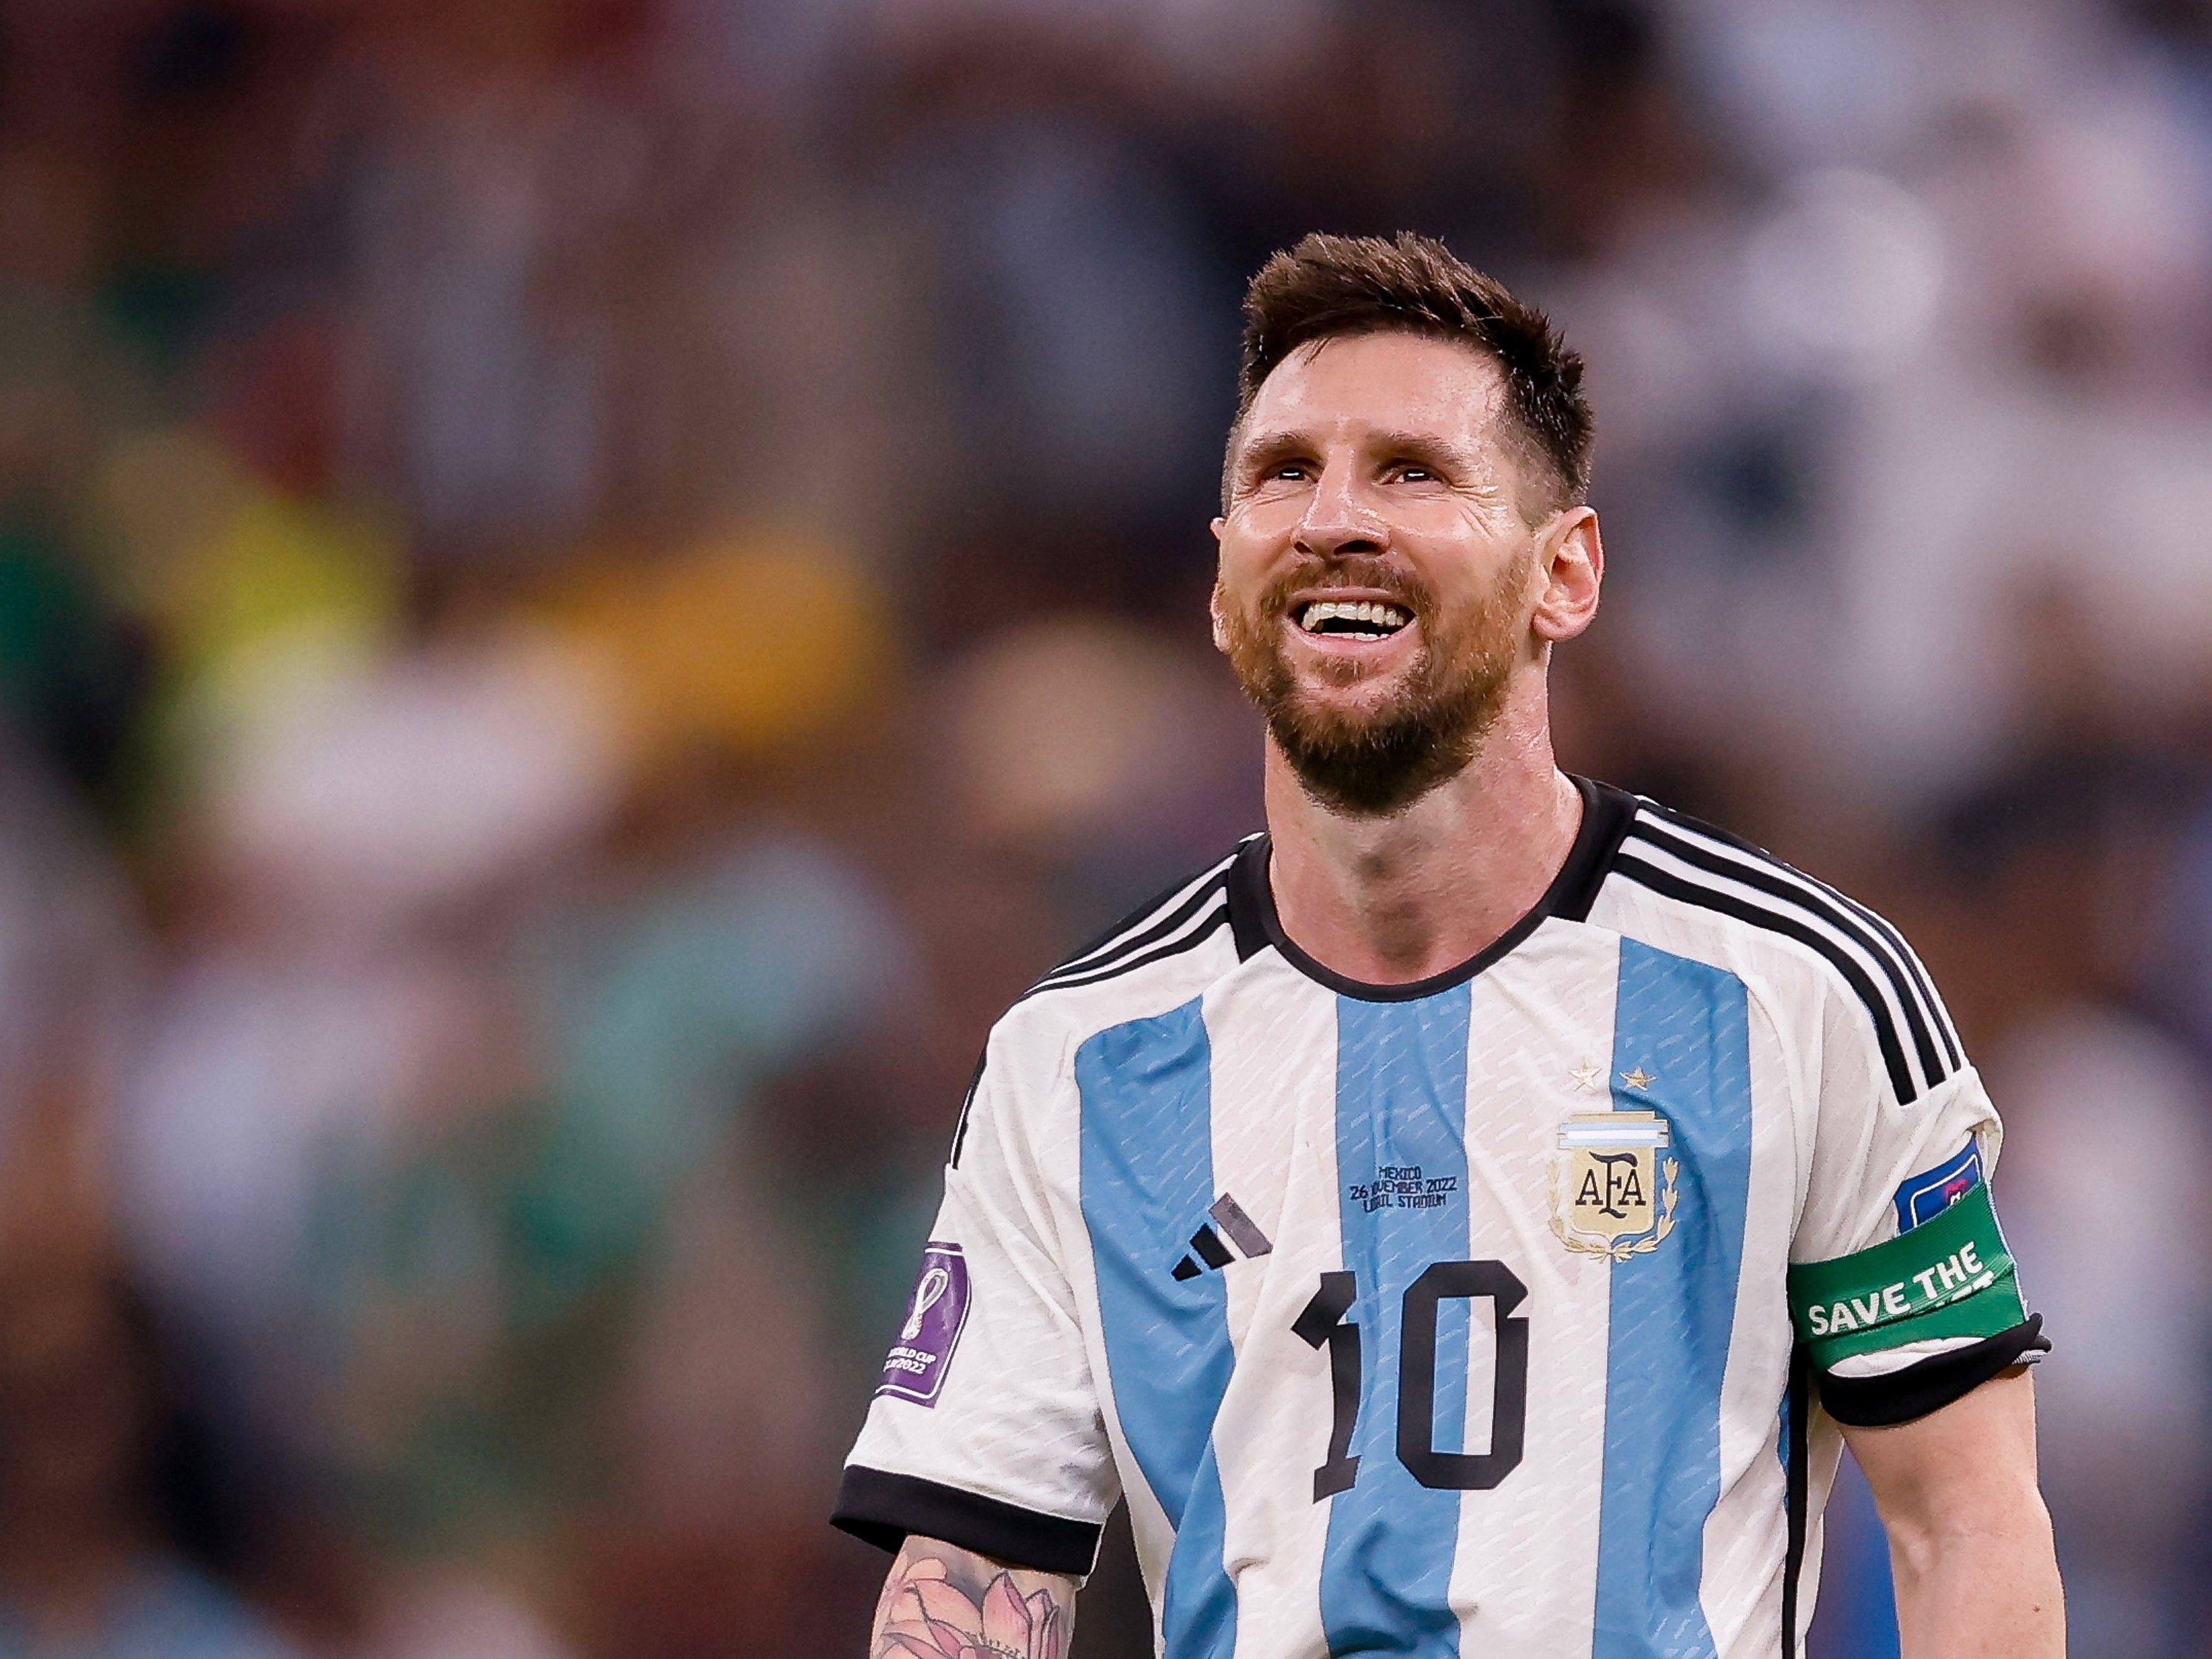 Lugano afirma que Copa do Mundo de Messi foi roubada e critica arbitragem:  'Mão amiga', Esportes